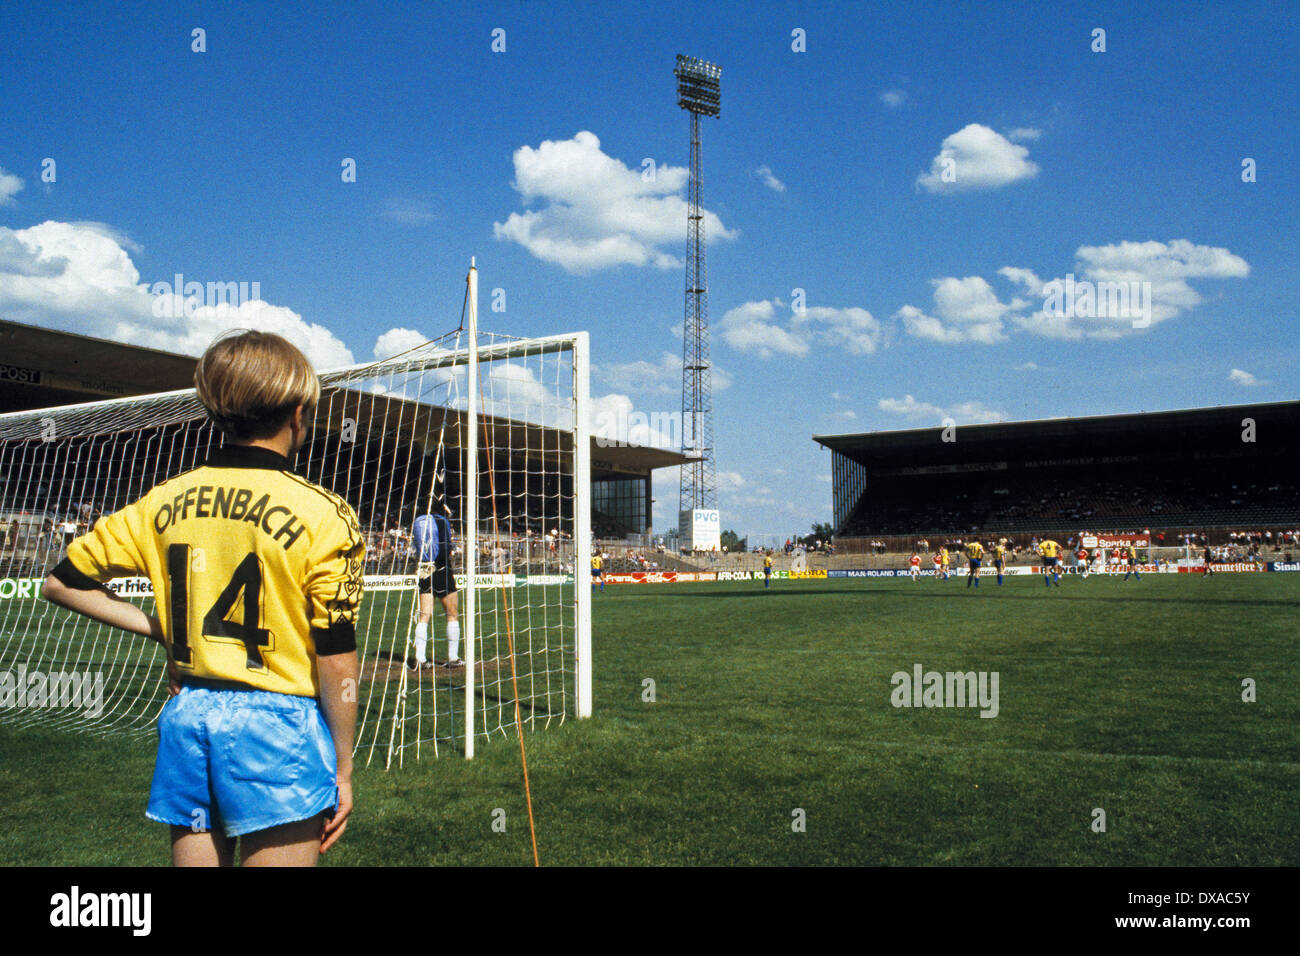 Stadionpanorama, Spielfeld, Tribuene, Balljunge, Fussball, Bundesliga, 1983/1984, Kickers Offenbach gegen Eintracht Braunschweig Stock Photo